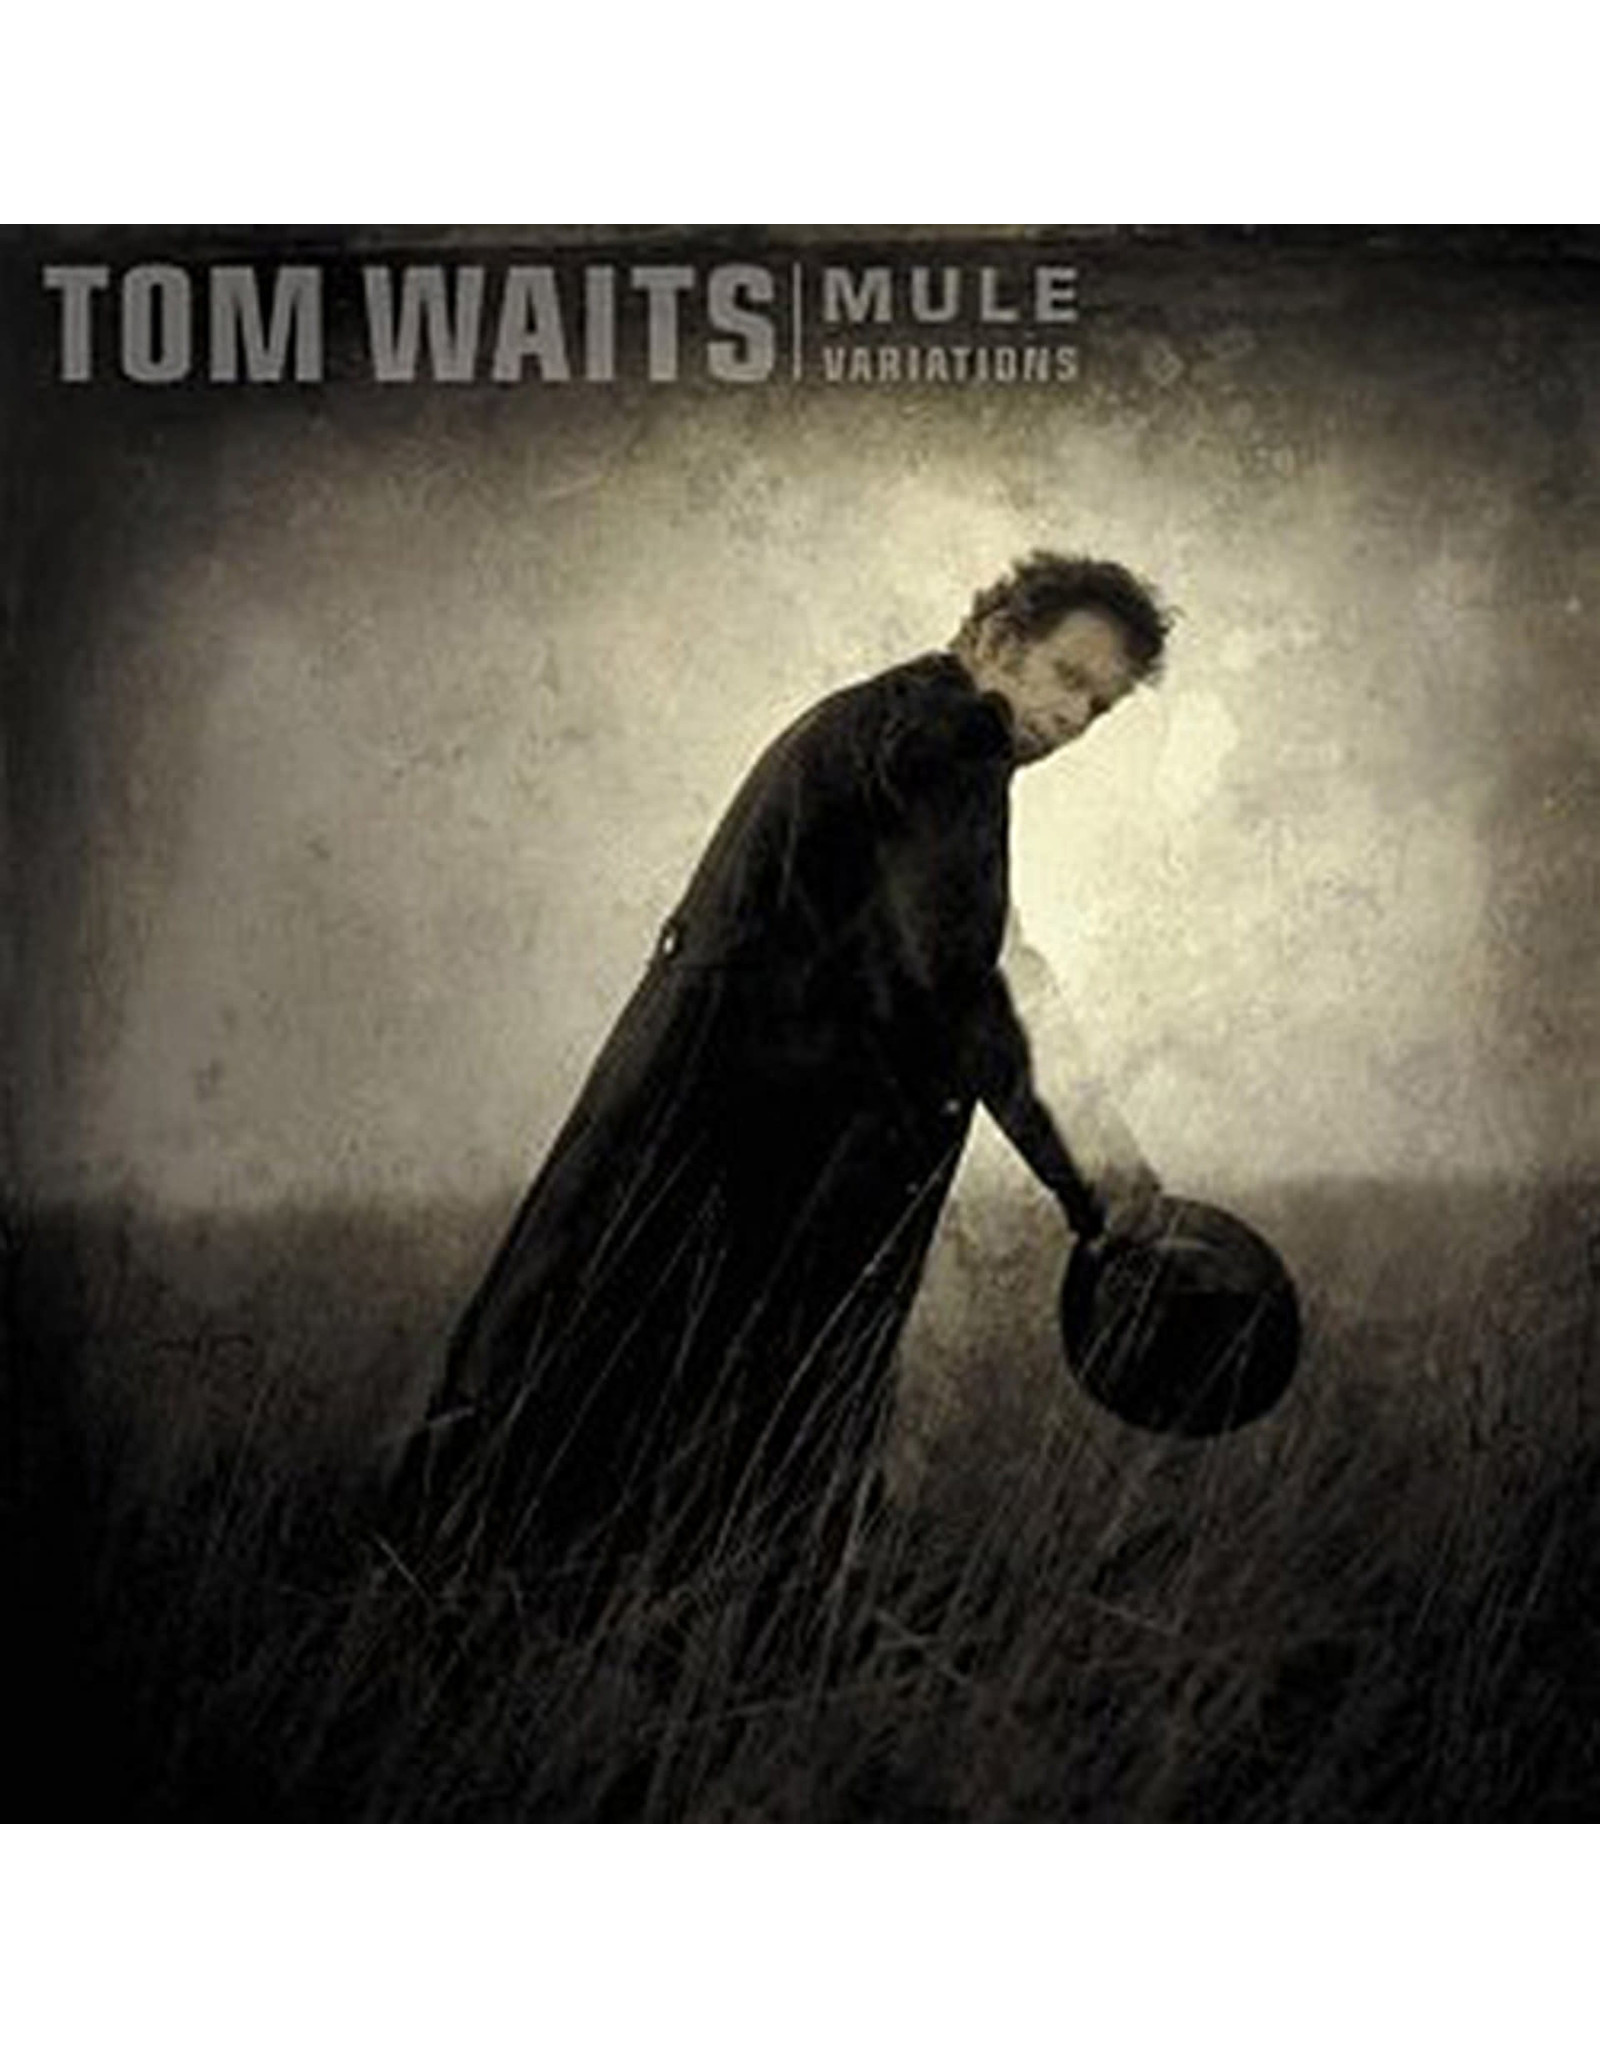 Anti Waits, Tom: Mule Variations (2LP) 2017 re-master LP